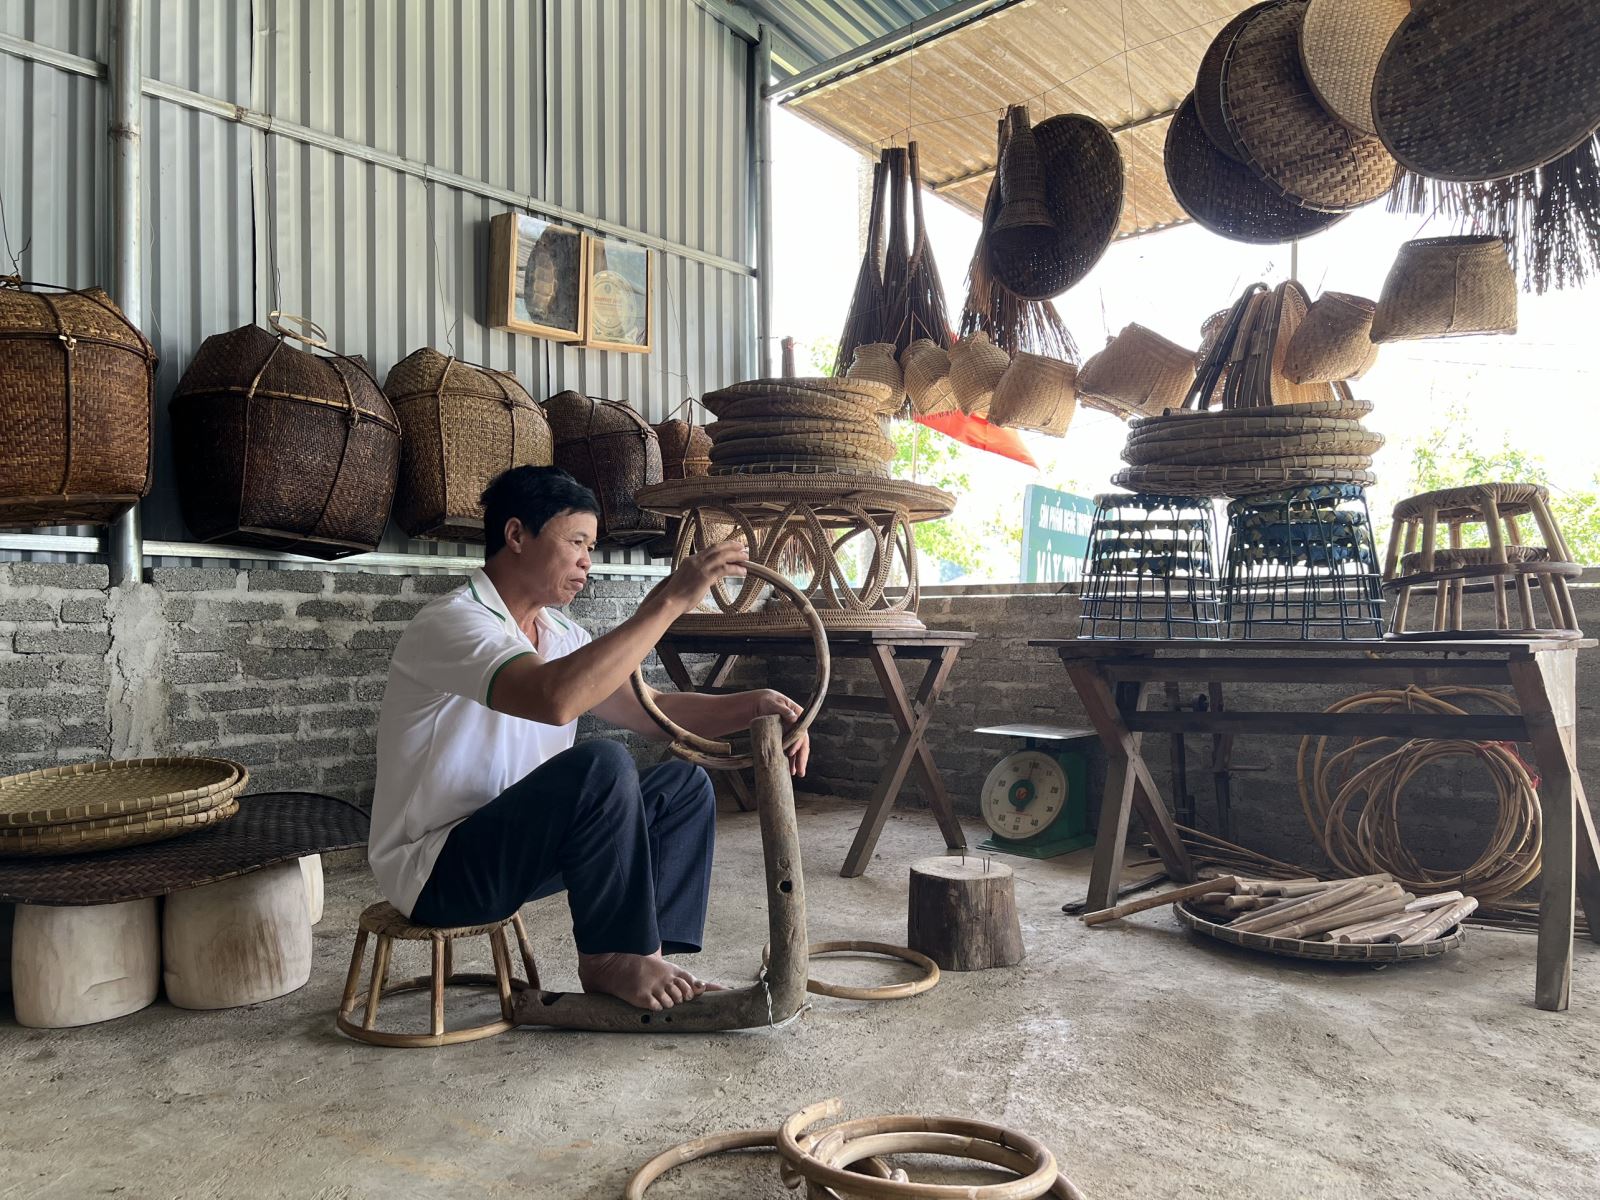 Gìn giữ nghề truyền thống mây tre đan ở bản Nà Tấu (Điện Biên)